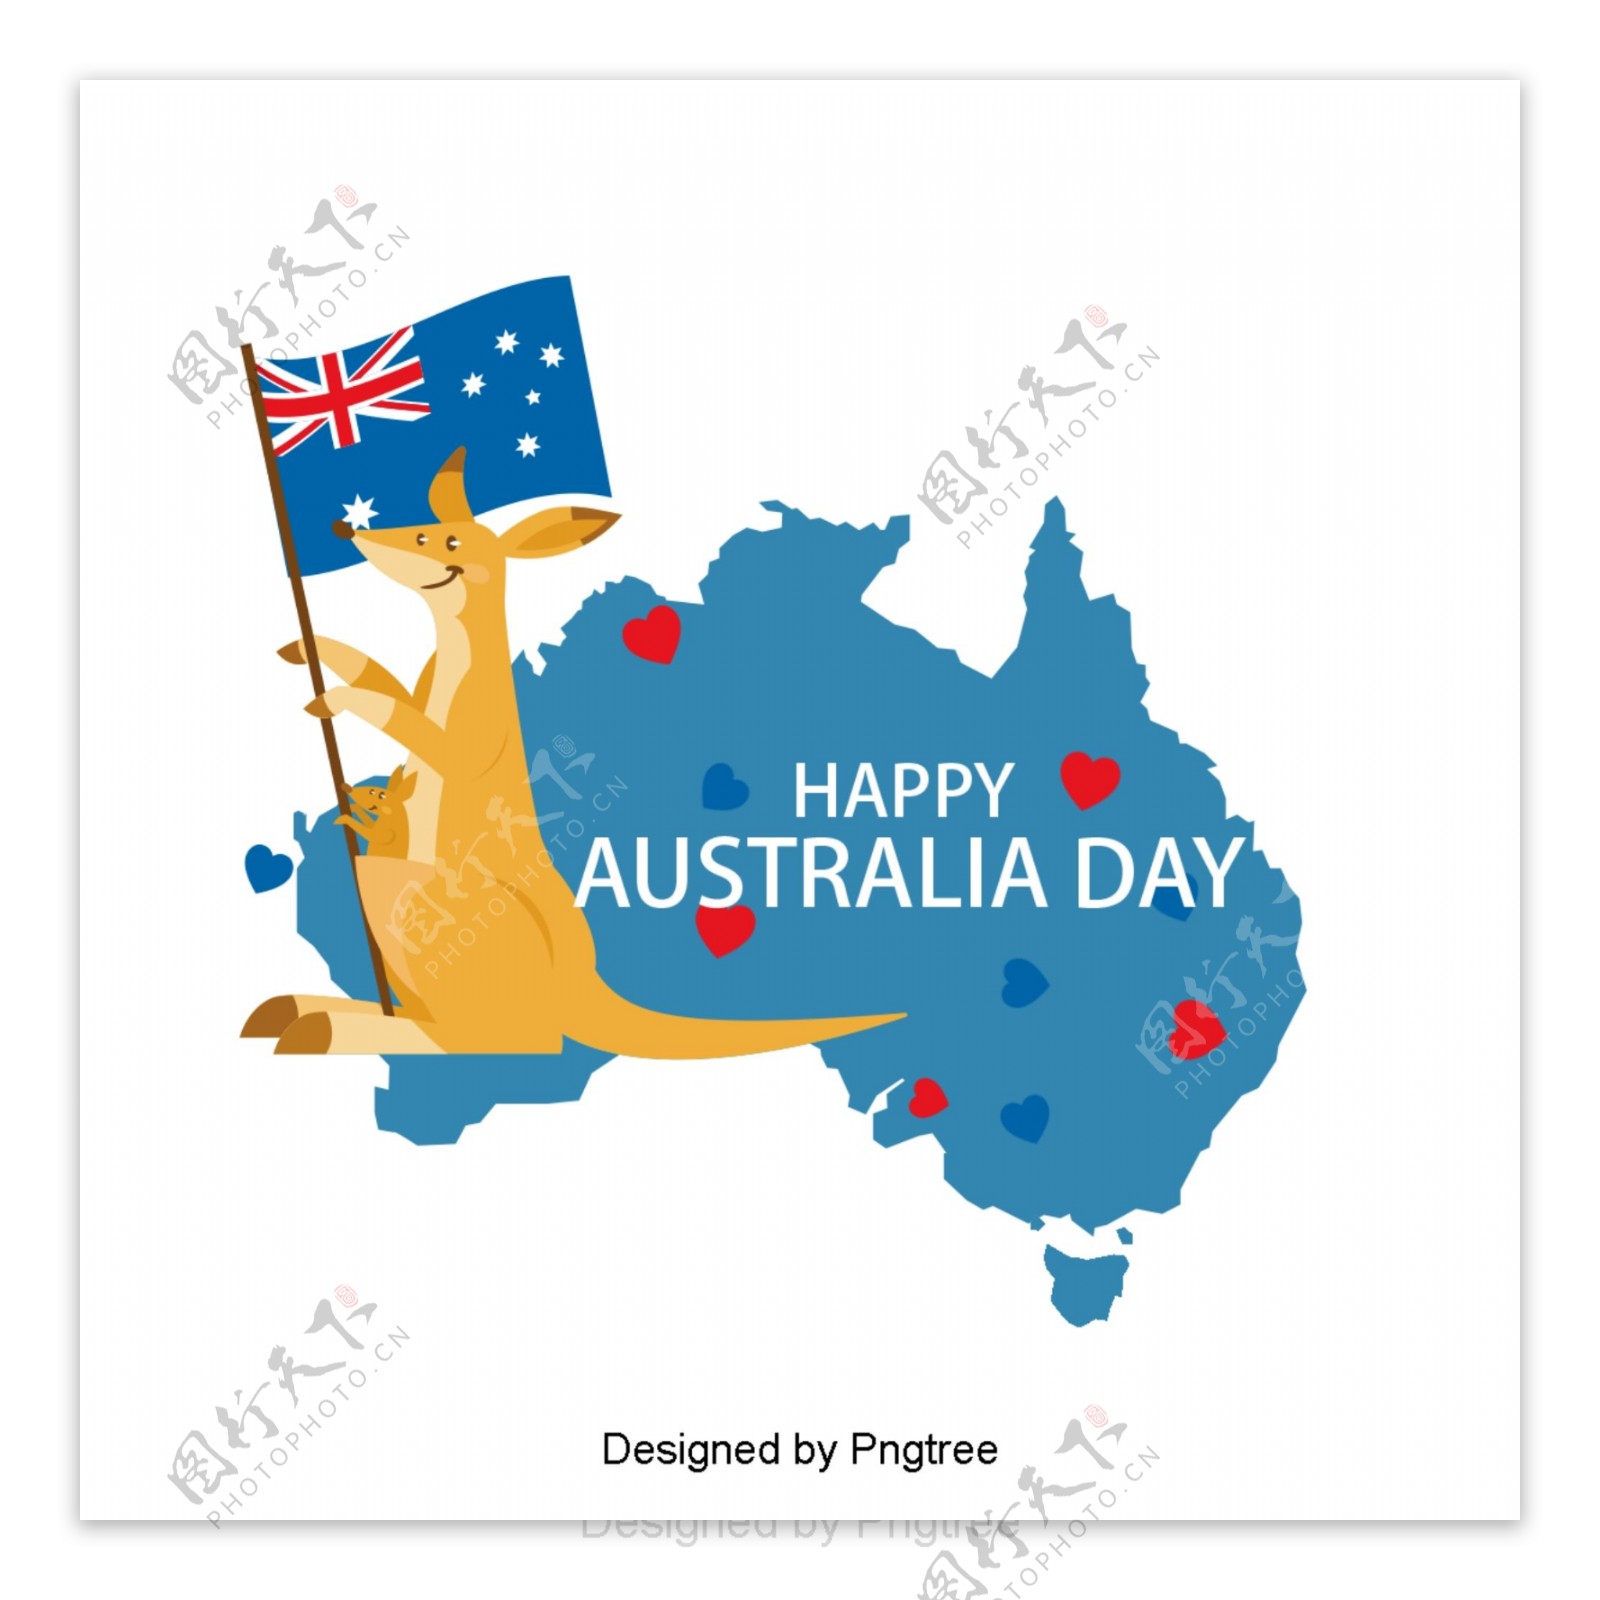 澳大利亚国旗蓝色袋鼠爱心国旗旗帜地图字体设计